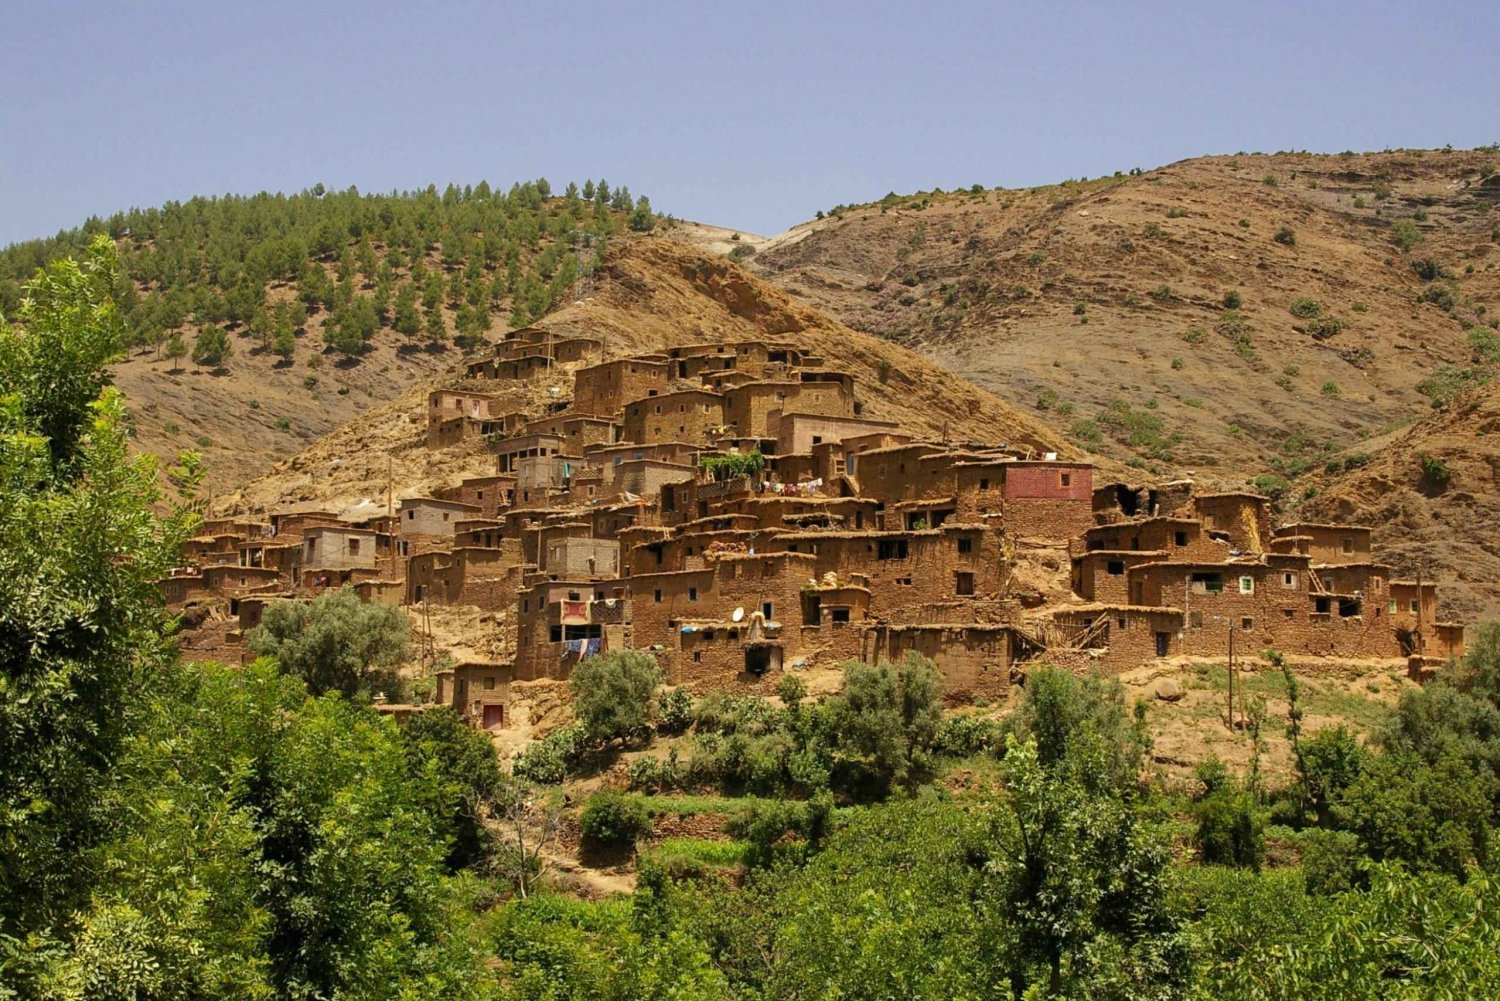 De Marrakech: Excursão às montanhas do Atlas e ao vale de Ourika